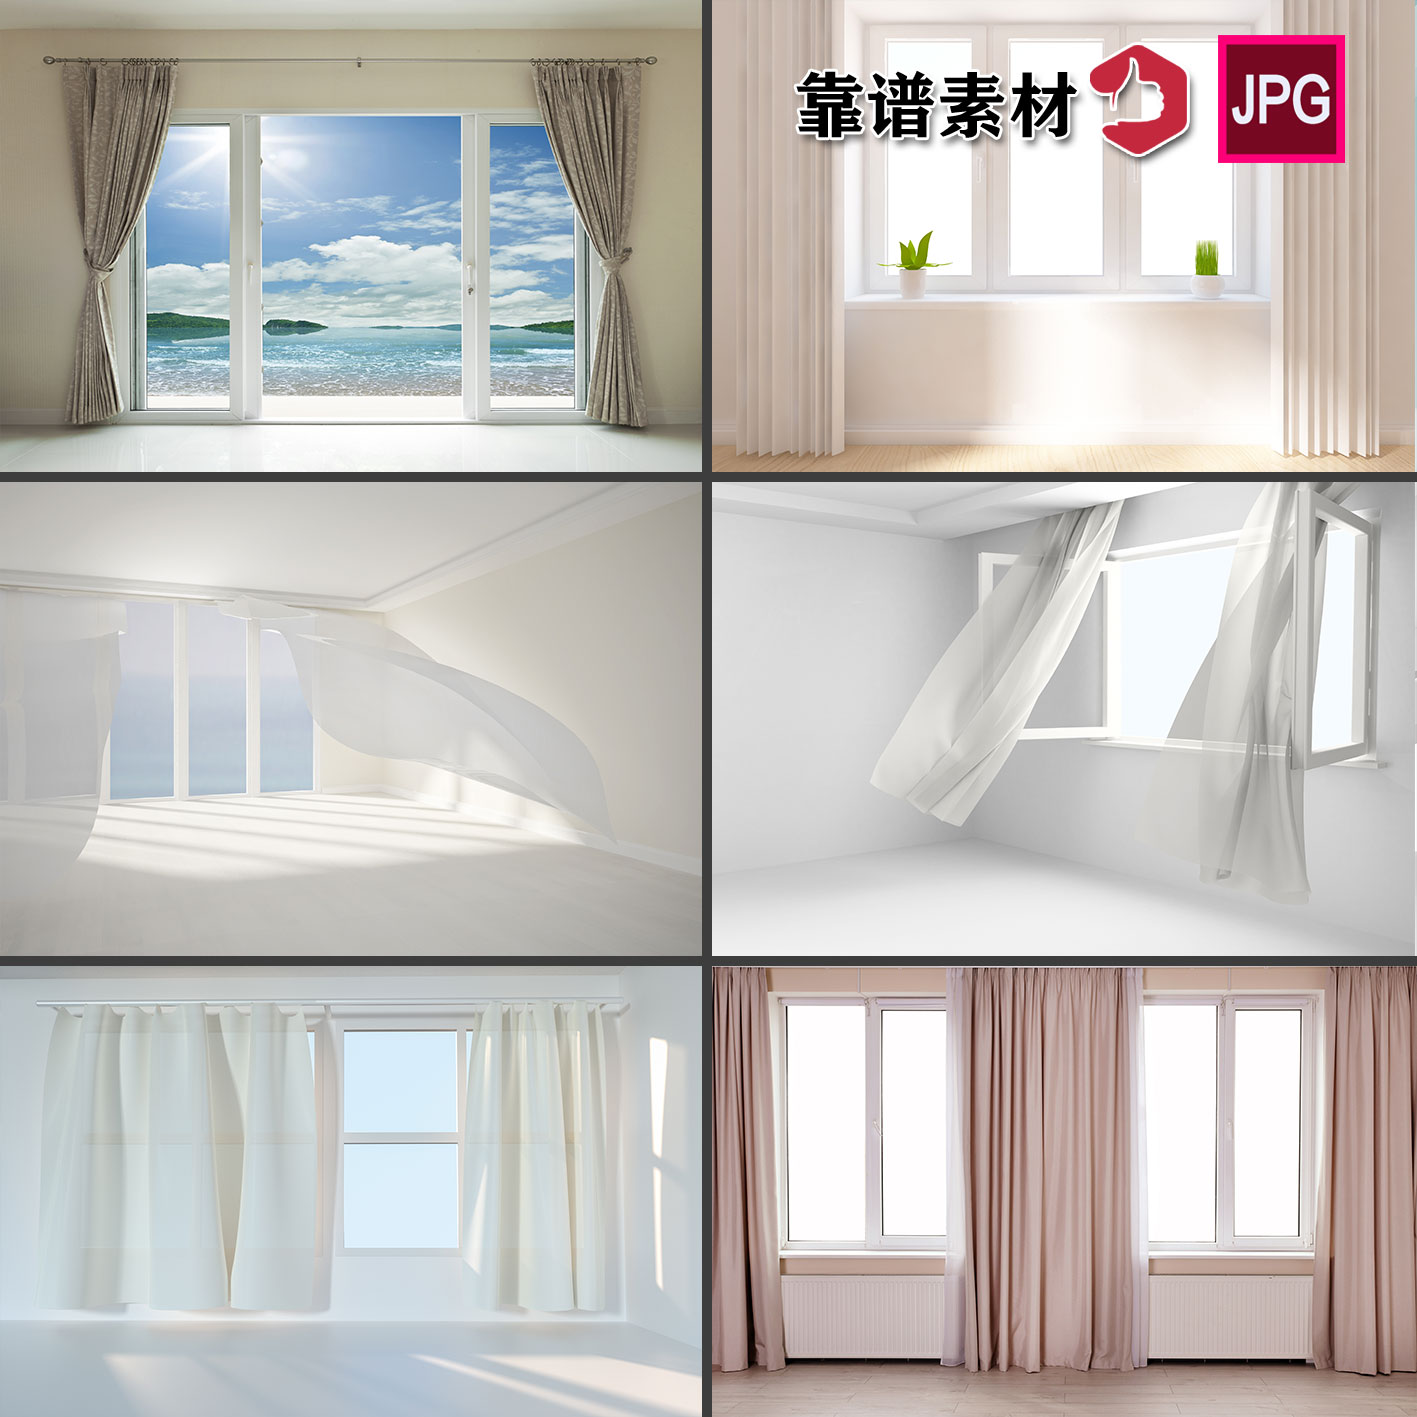 窗户窗帘飘窗空白房间高清背景图片设计素材